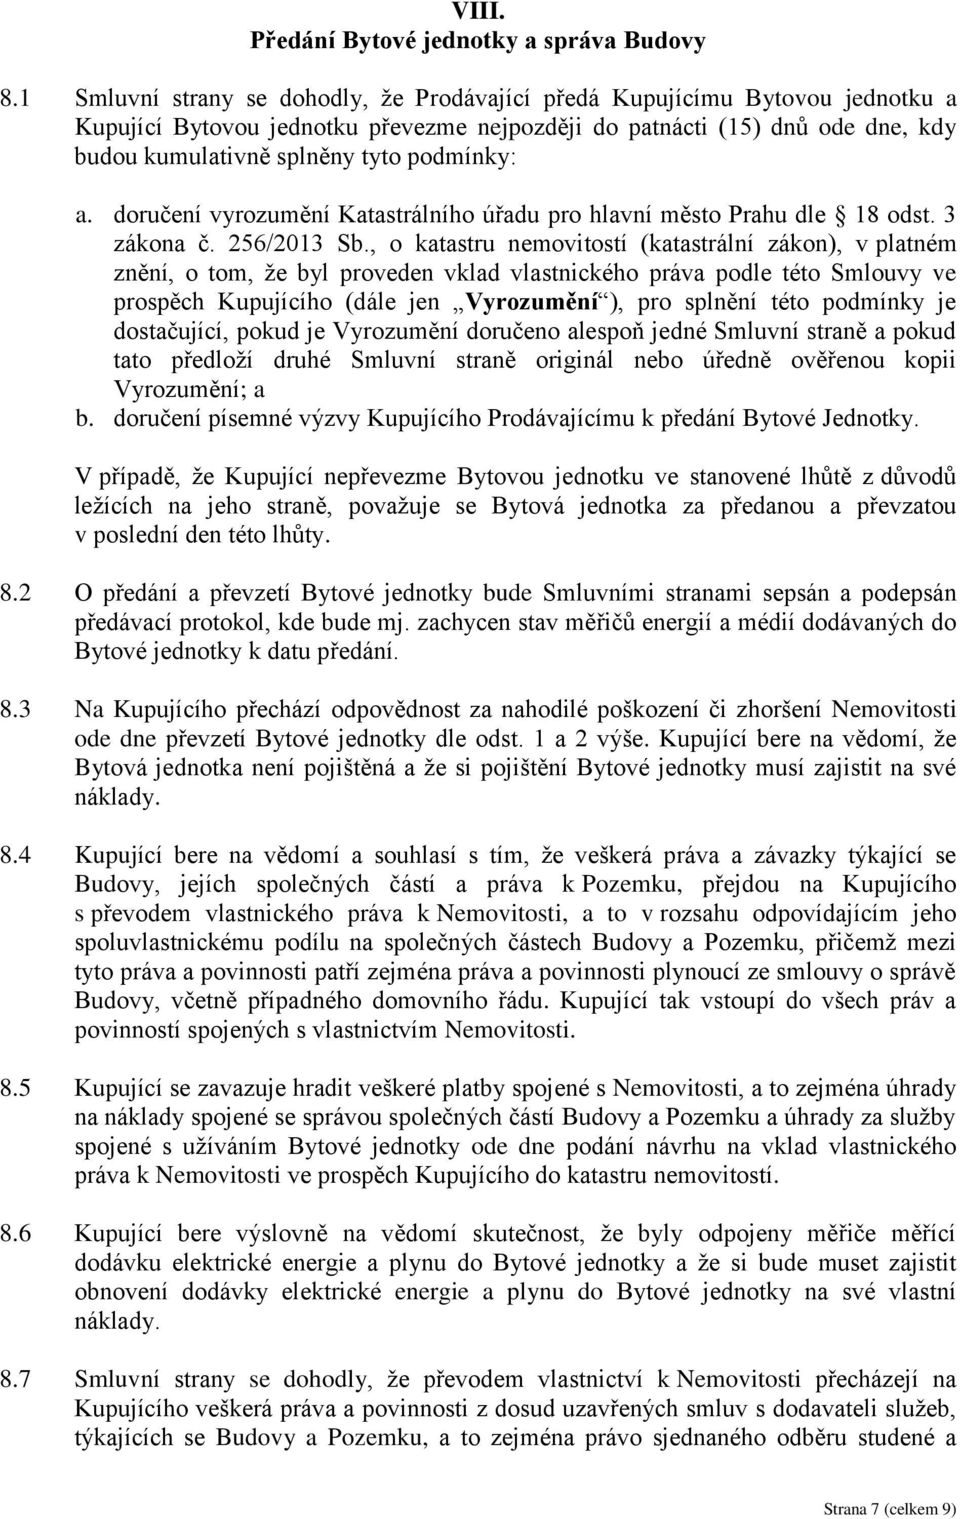 podmínky: a. doručení vyrozumění Katastrálního úřadu pro hlavní město Prahu dle 18 odst. 3 zákona č. 256/2013 Sb.